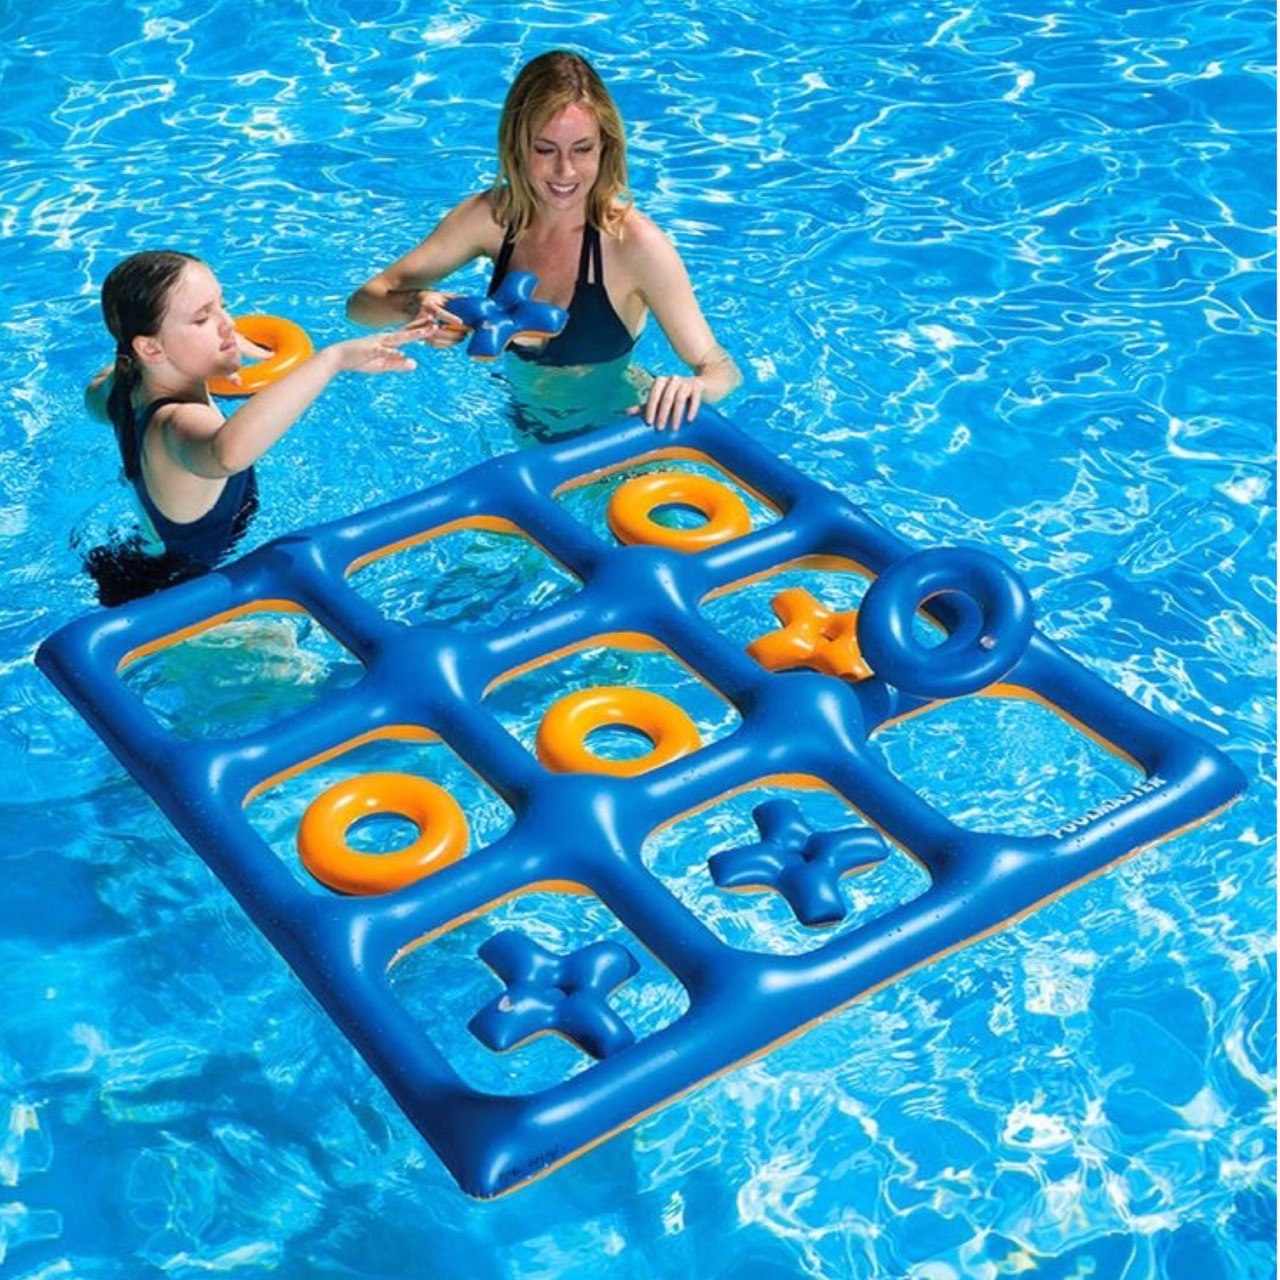 Поиграть в воде. Игрушки для бассейна. Инвентарь для купания. Инвентарь для плавания в бассейне. Игры в бассейне для детей.